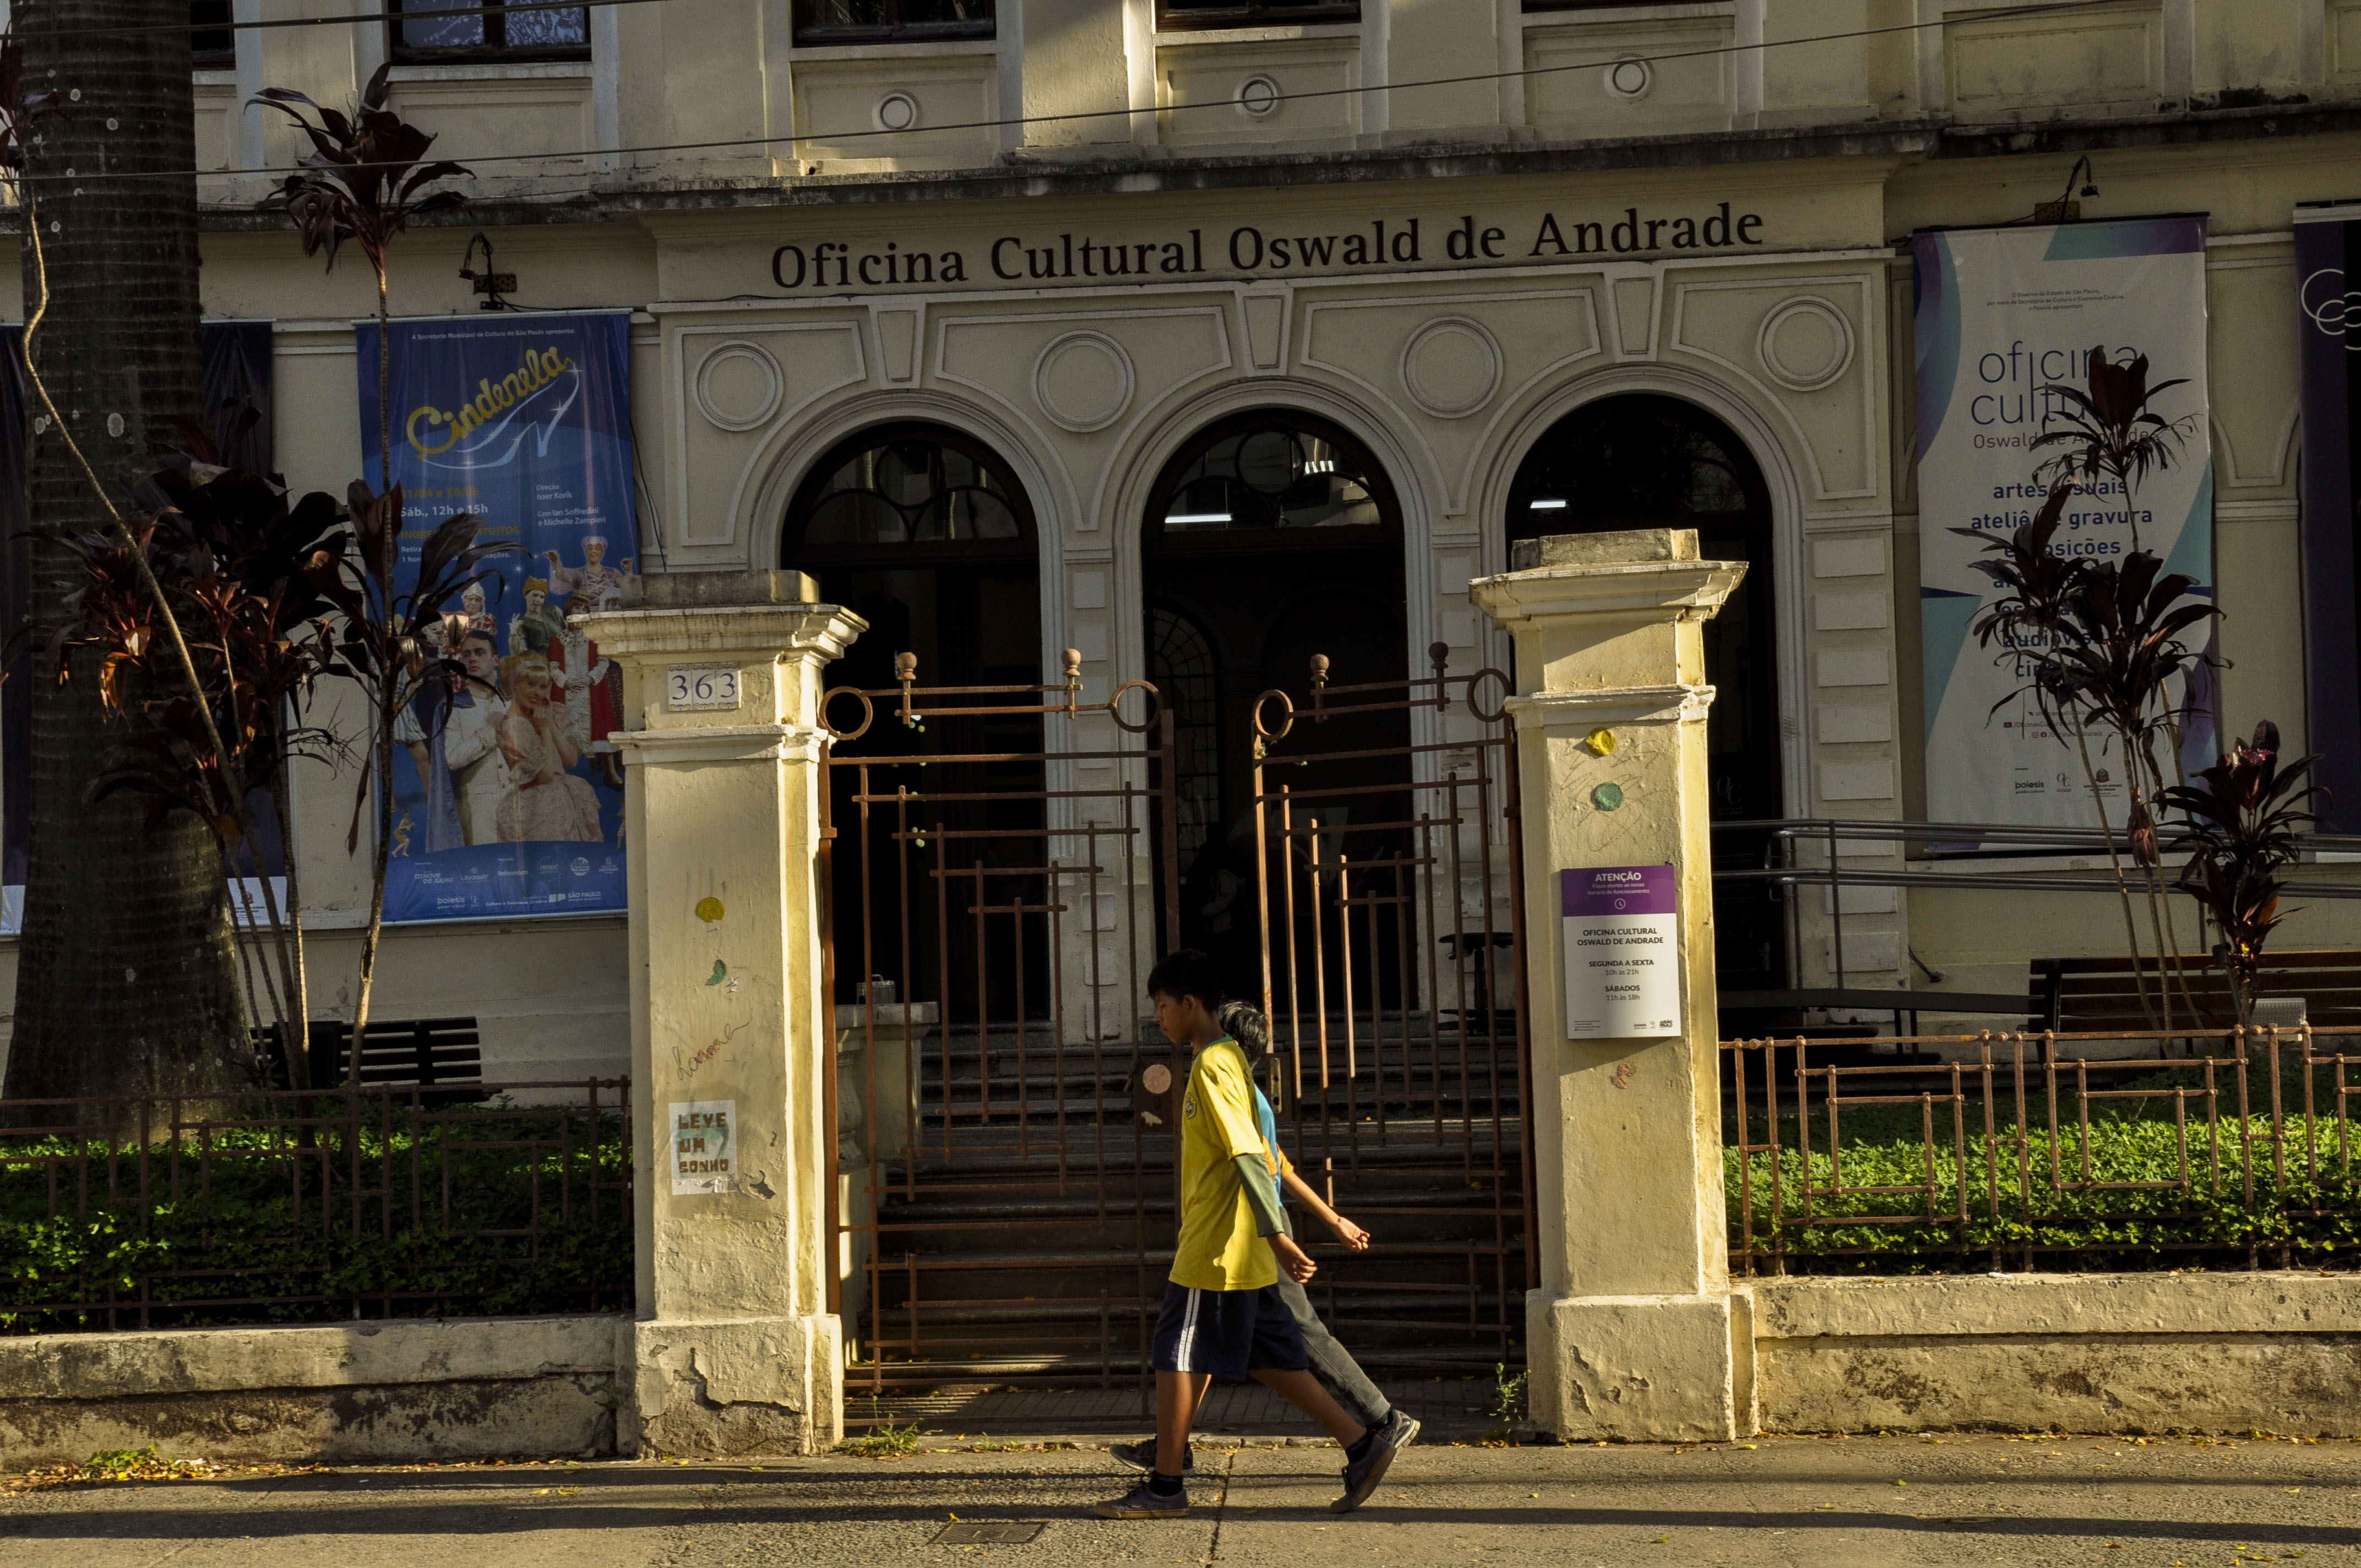 Crianças bolivianas andam em frente a casa cultural Oswald de Andrade